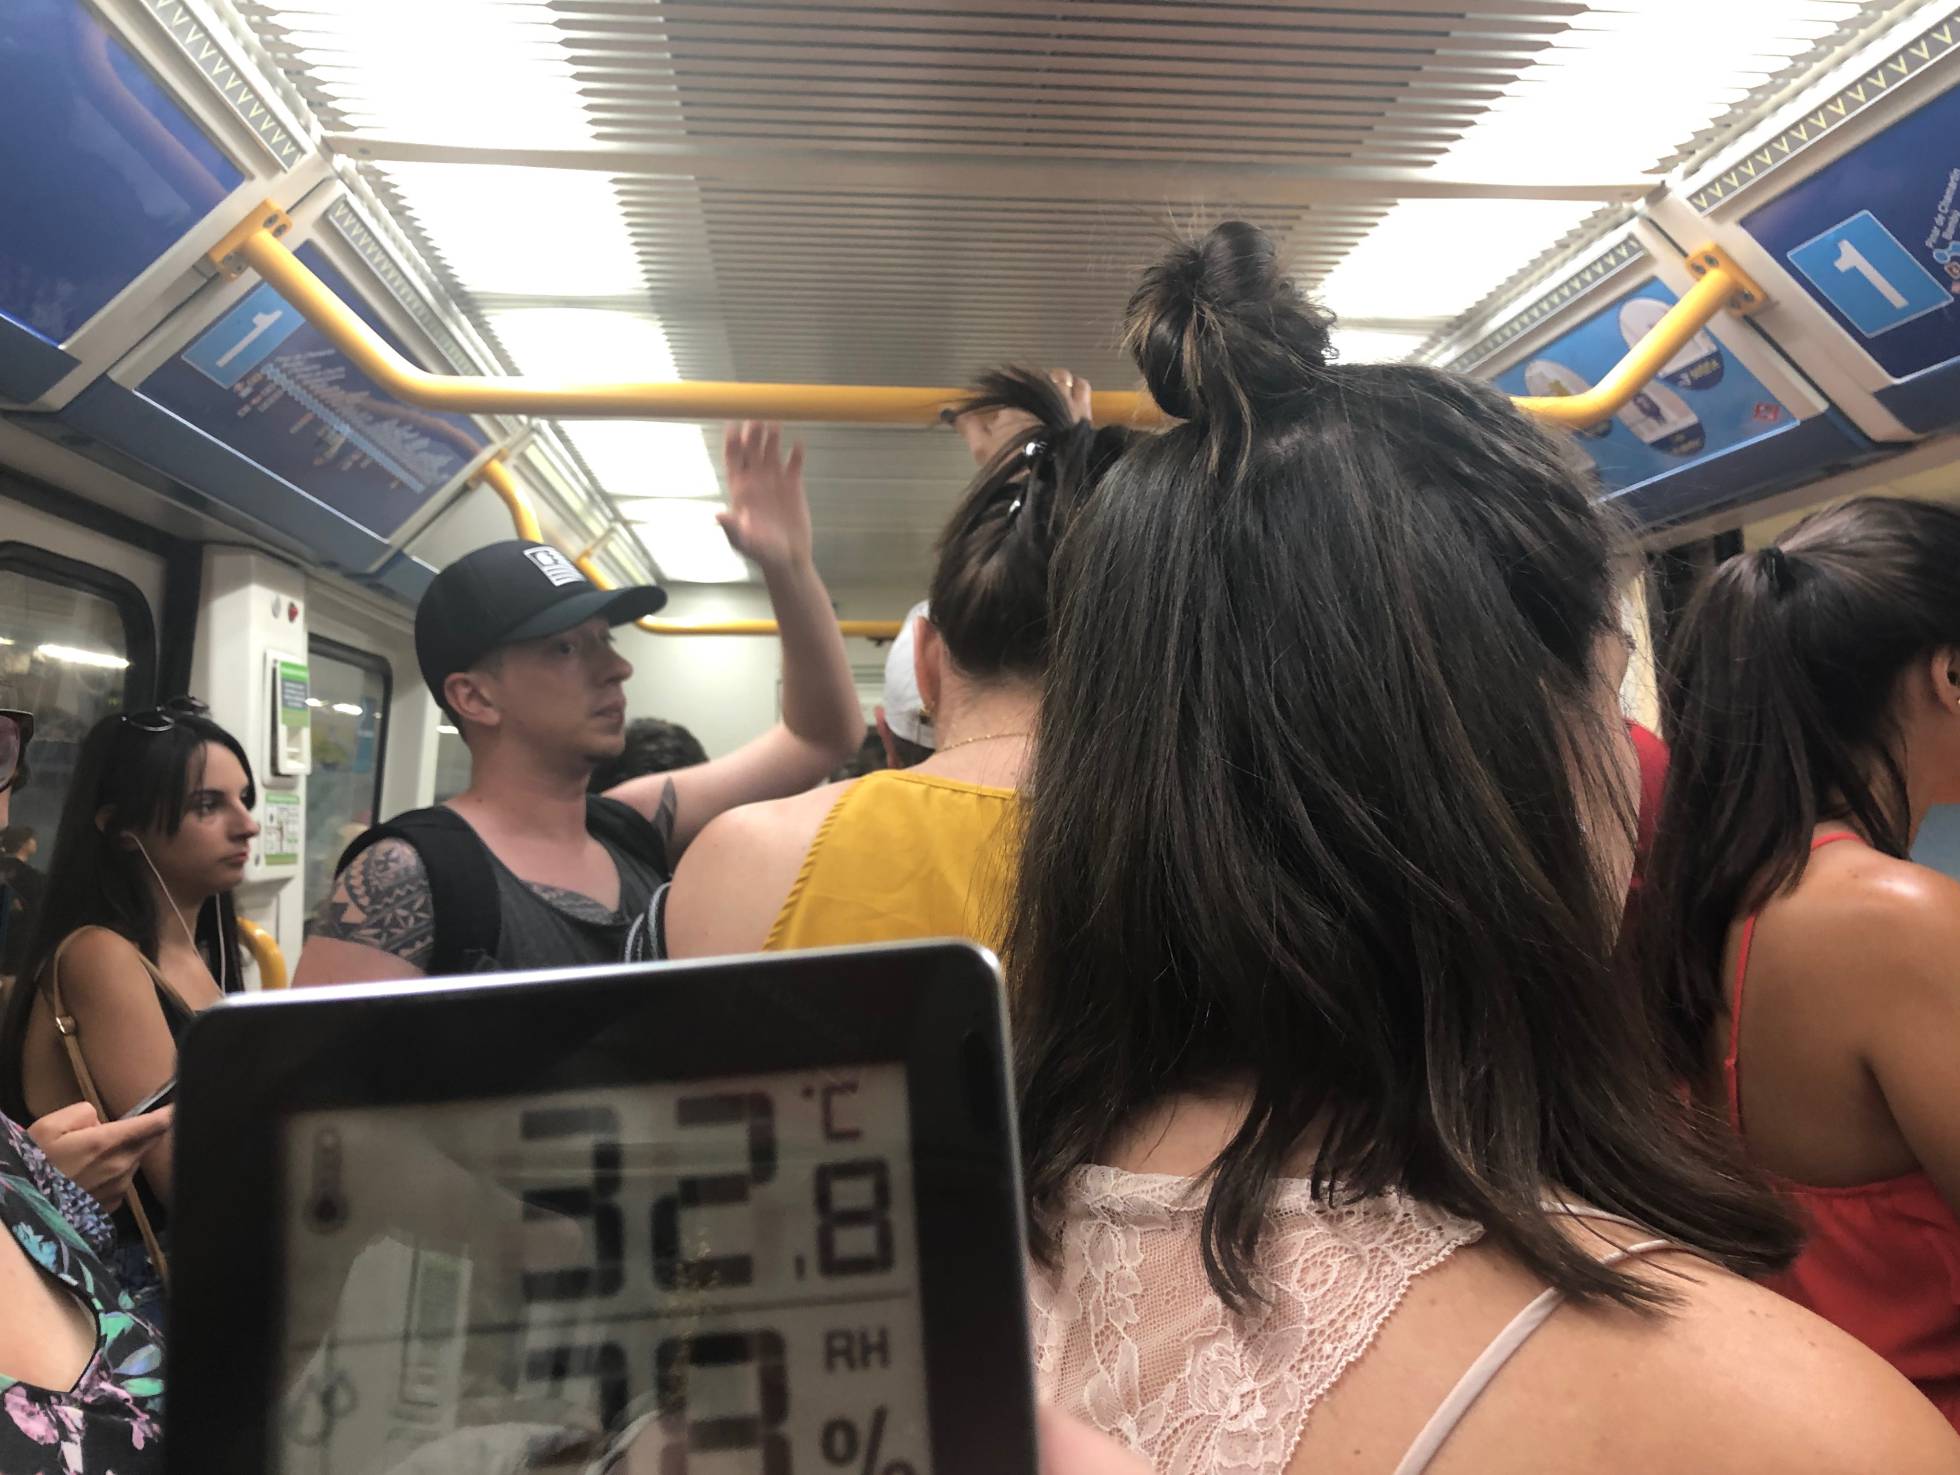 De la chaquetilla al abanico: 10 grados de diferencia de temperatura en vagones del Metro de Madrid